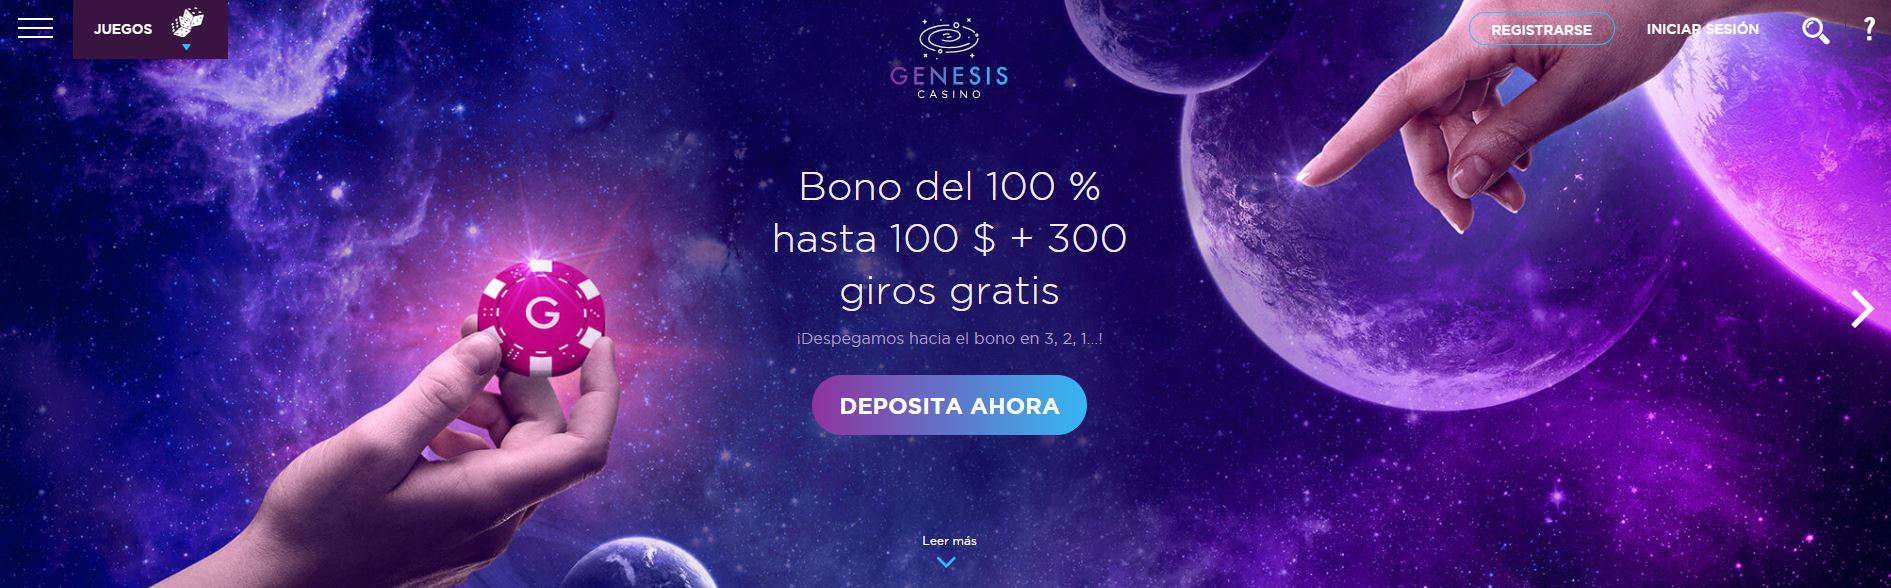 bono e promozione del Genesis Casino Chile